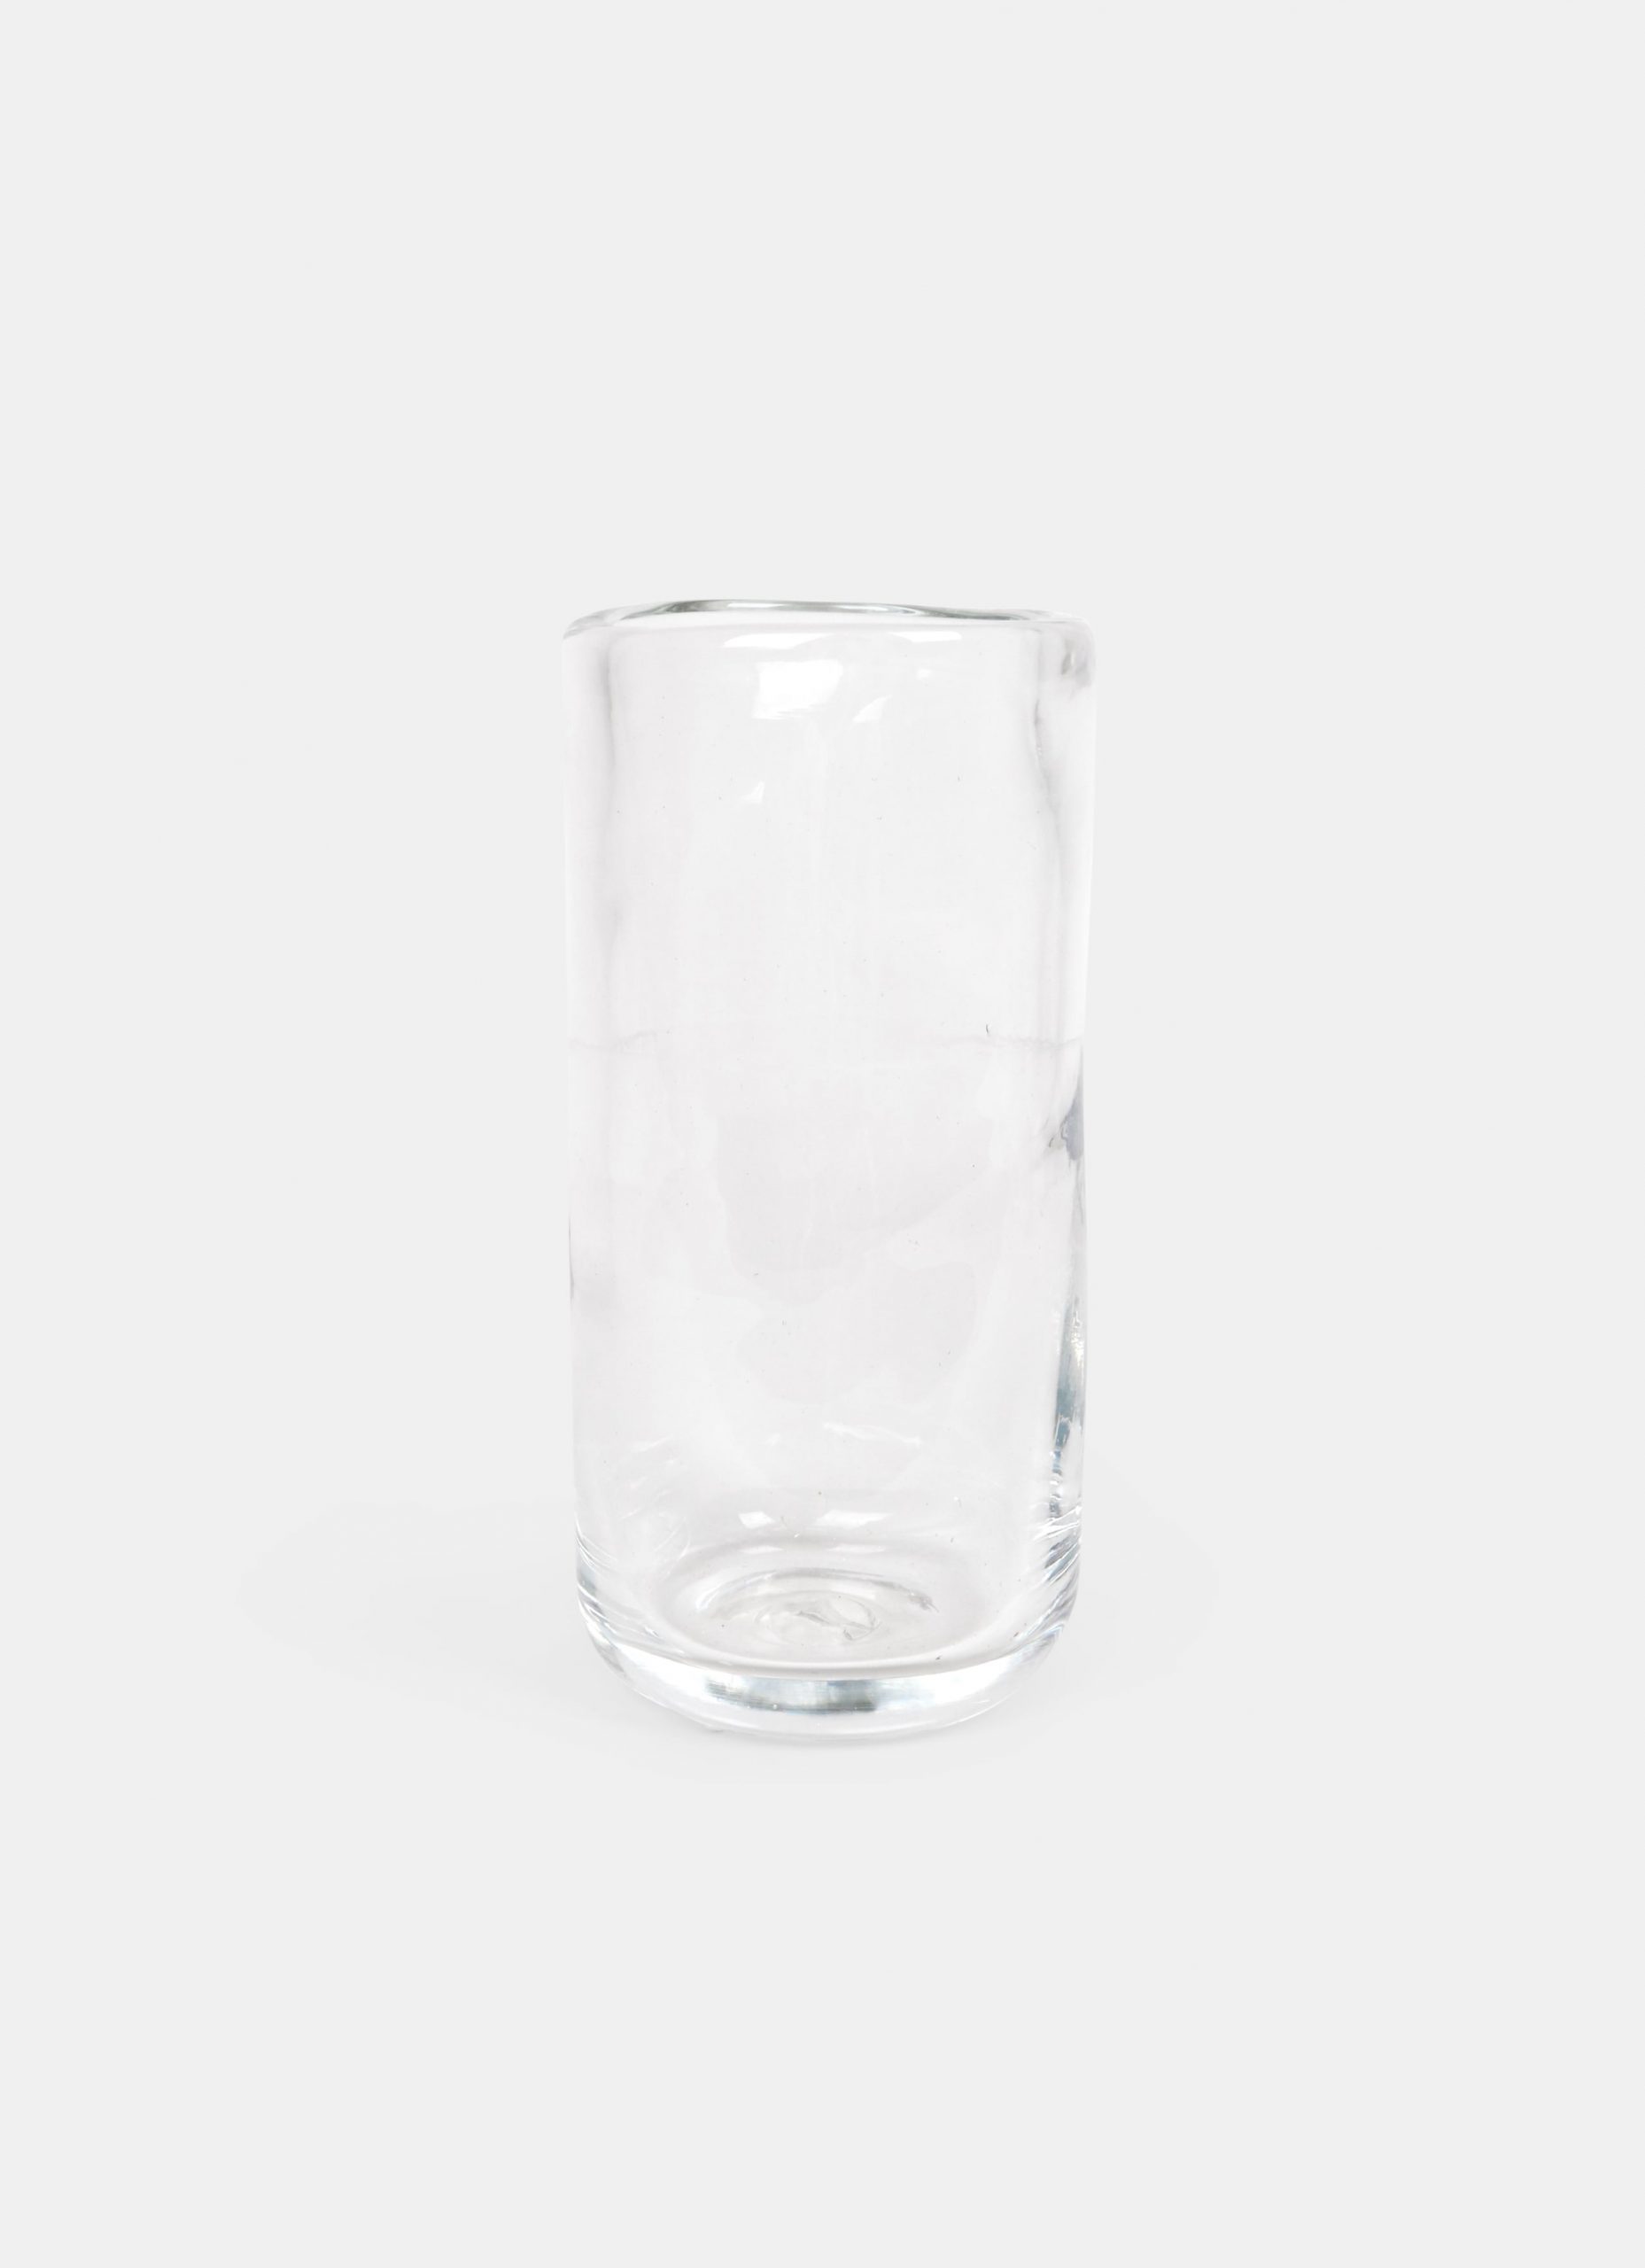 Frama - Glassware - Studio 0405 - Vase clear